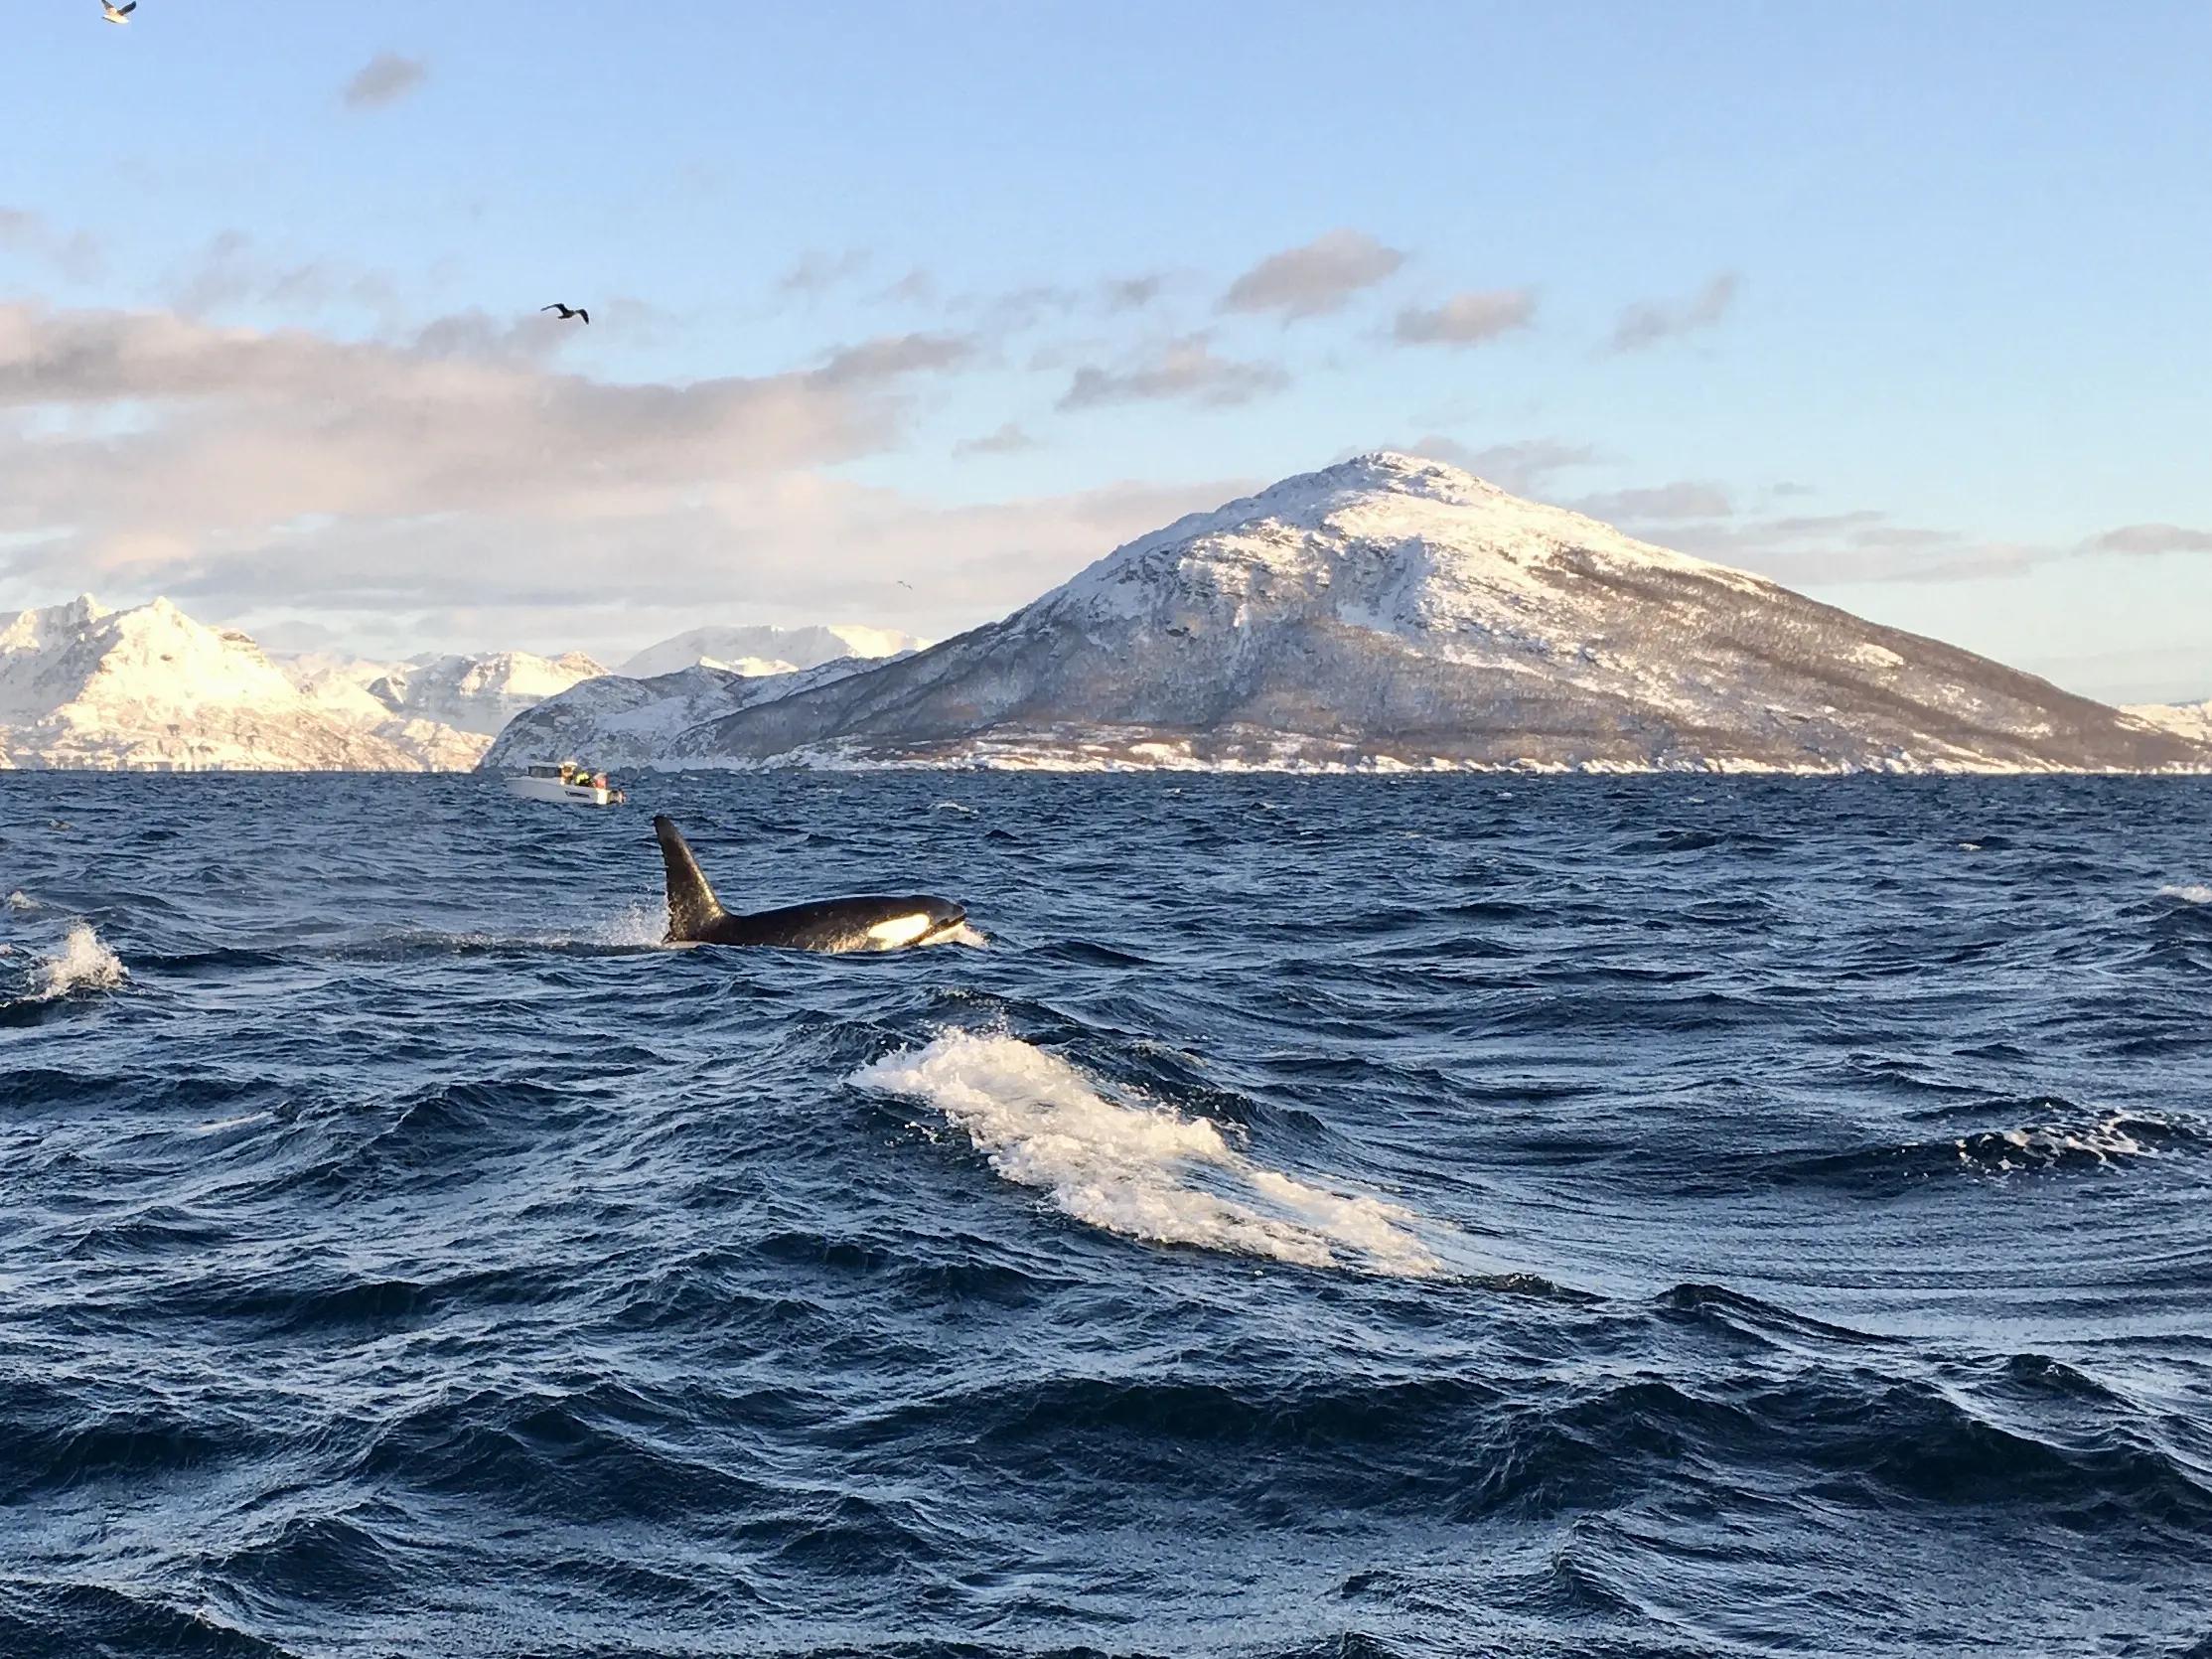 Whale safari from Skjervøy